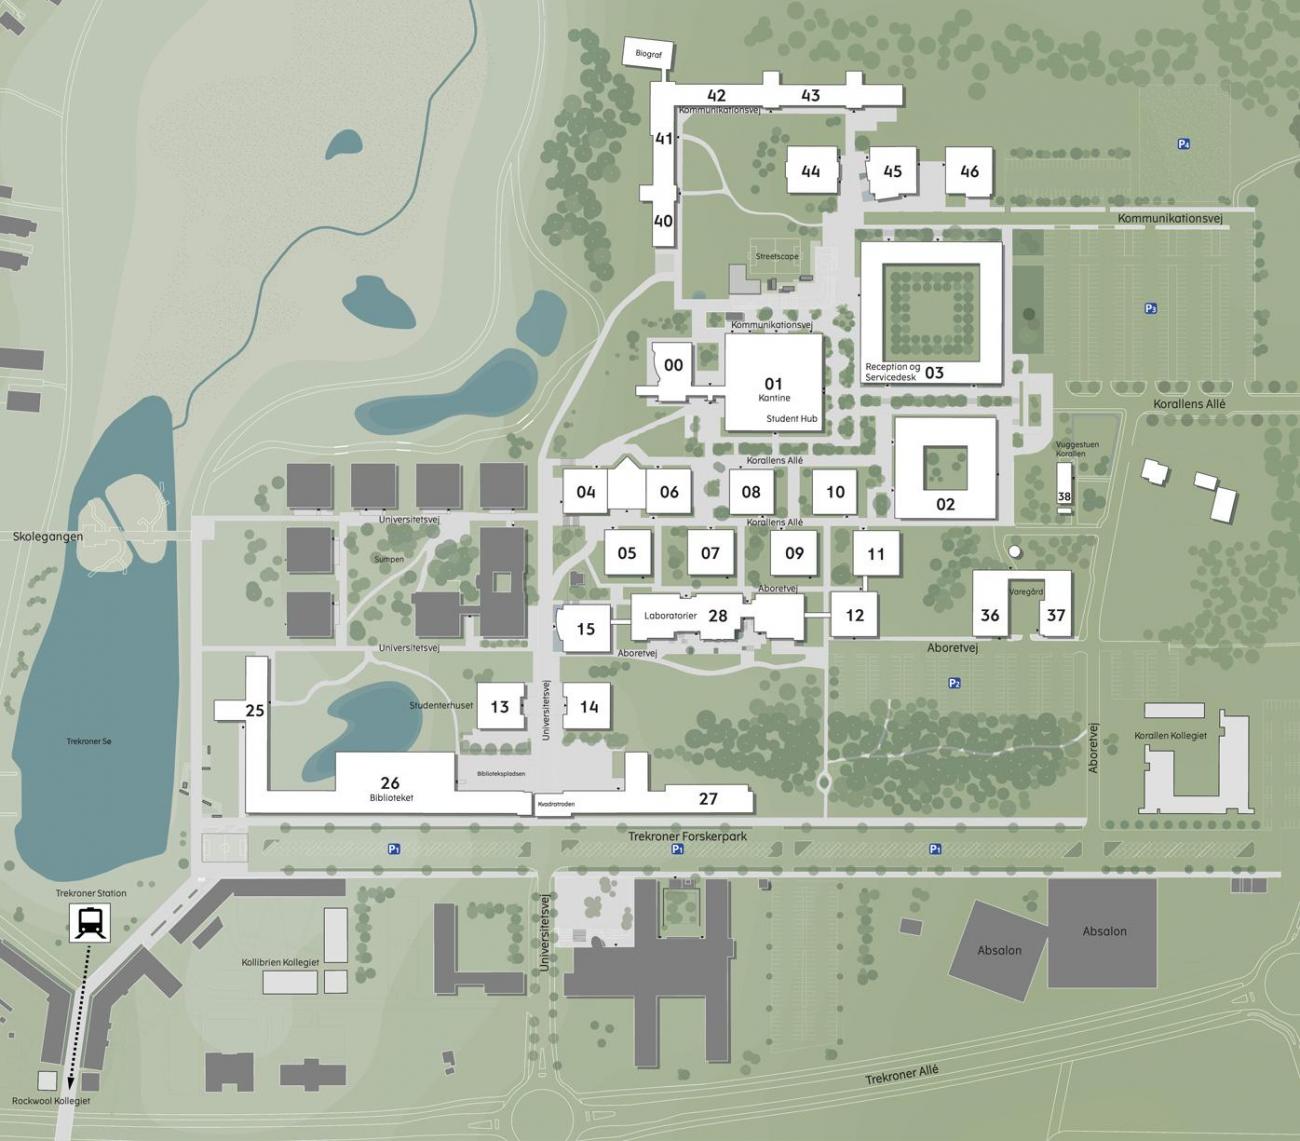 Map of RUC Campus